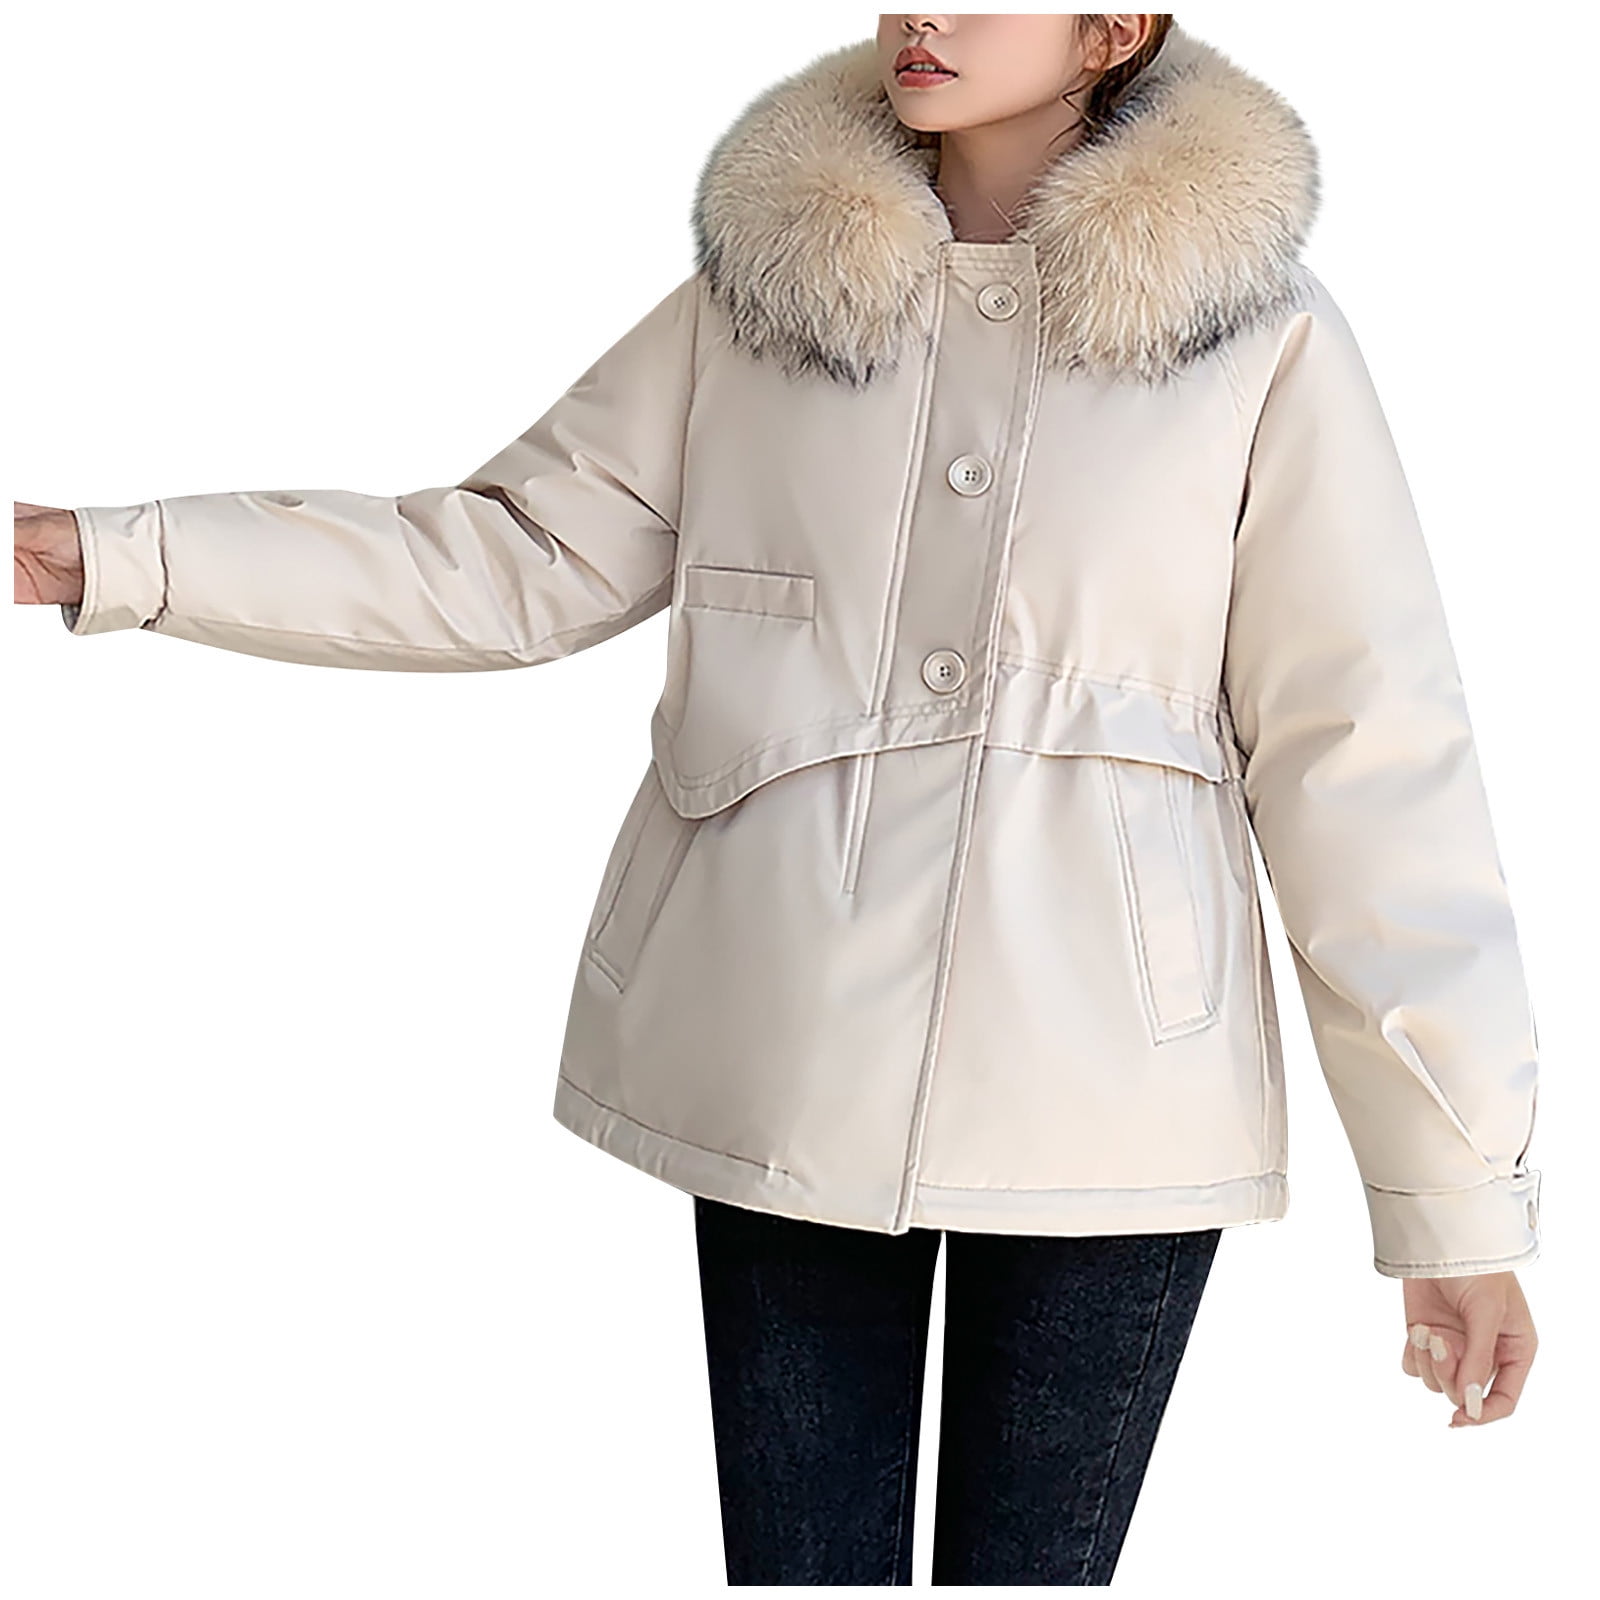 SMihono Women's Fashion Plus Size Velvet jacket Suit Coat Discount